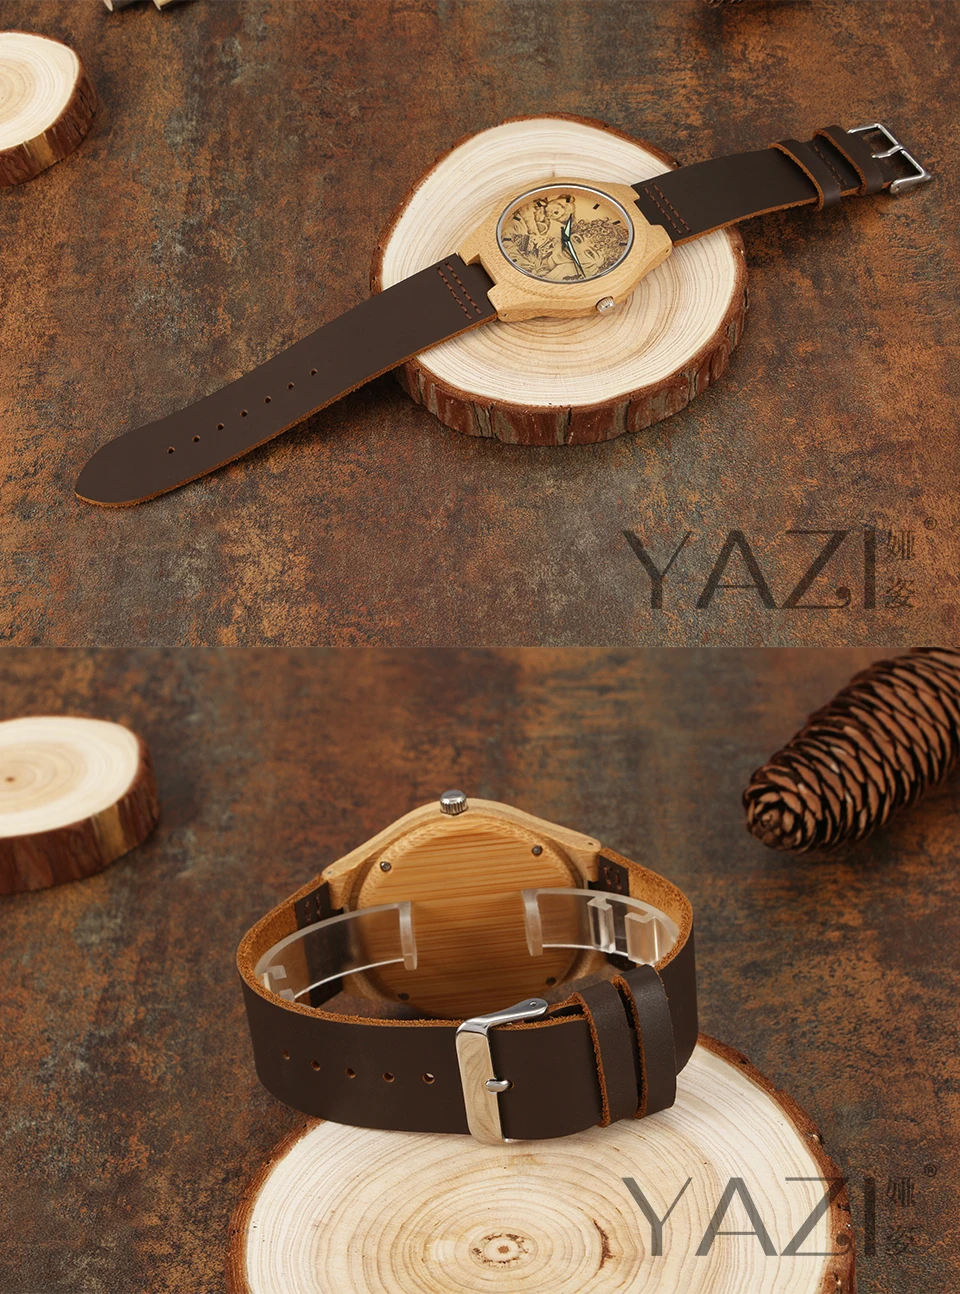 YAZI персональные пользовательские фото деревянные часы напечатайте свой собственный эскиз дизайн наручные часы натуральная бамбуковая